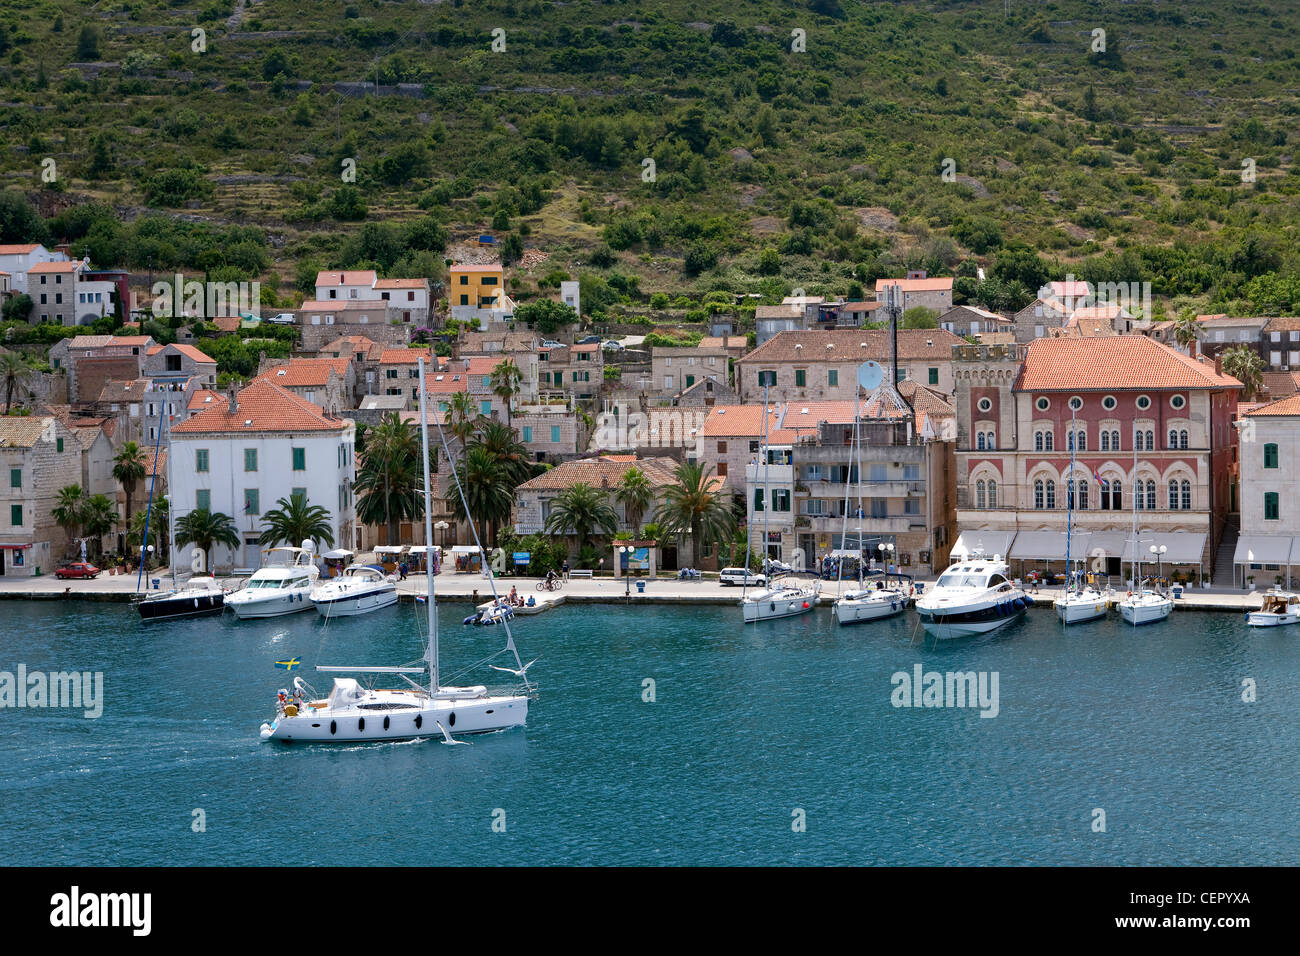 VIS Hafen auf der Insel Vis, Adria, Kroatien Stockfoto